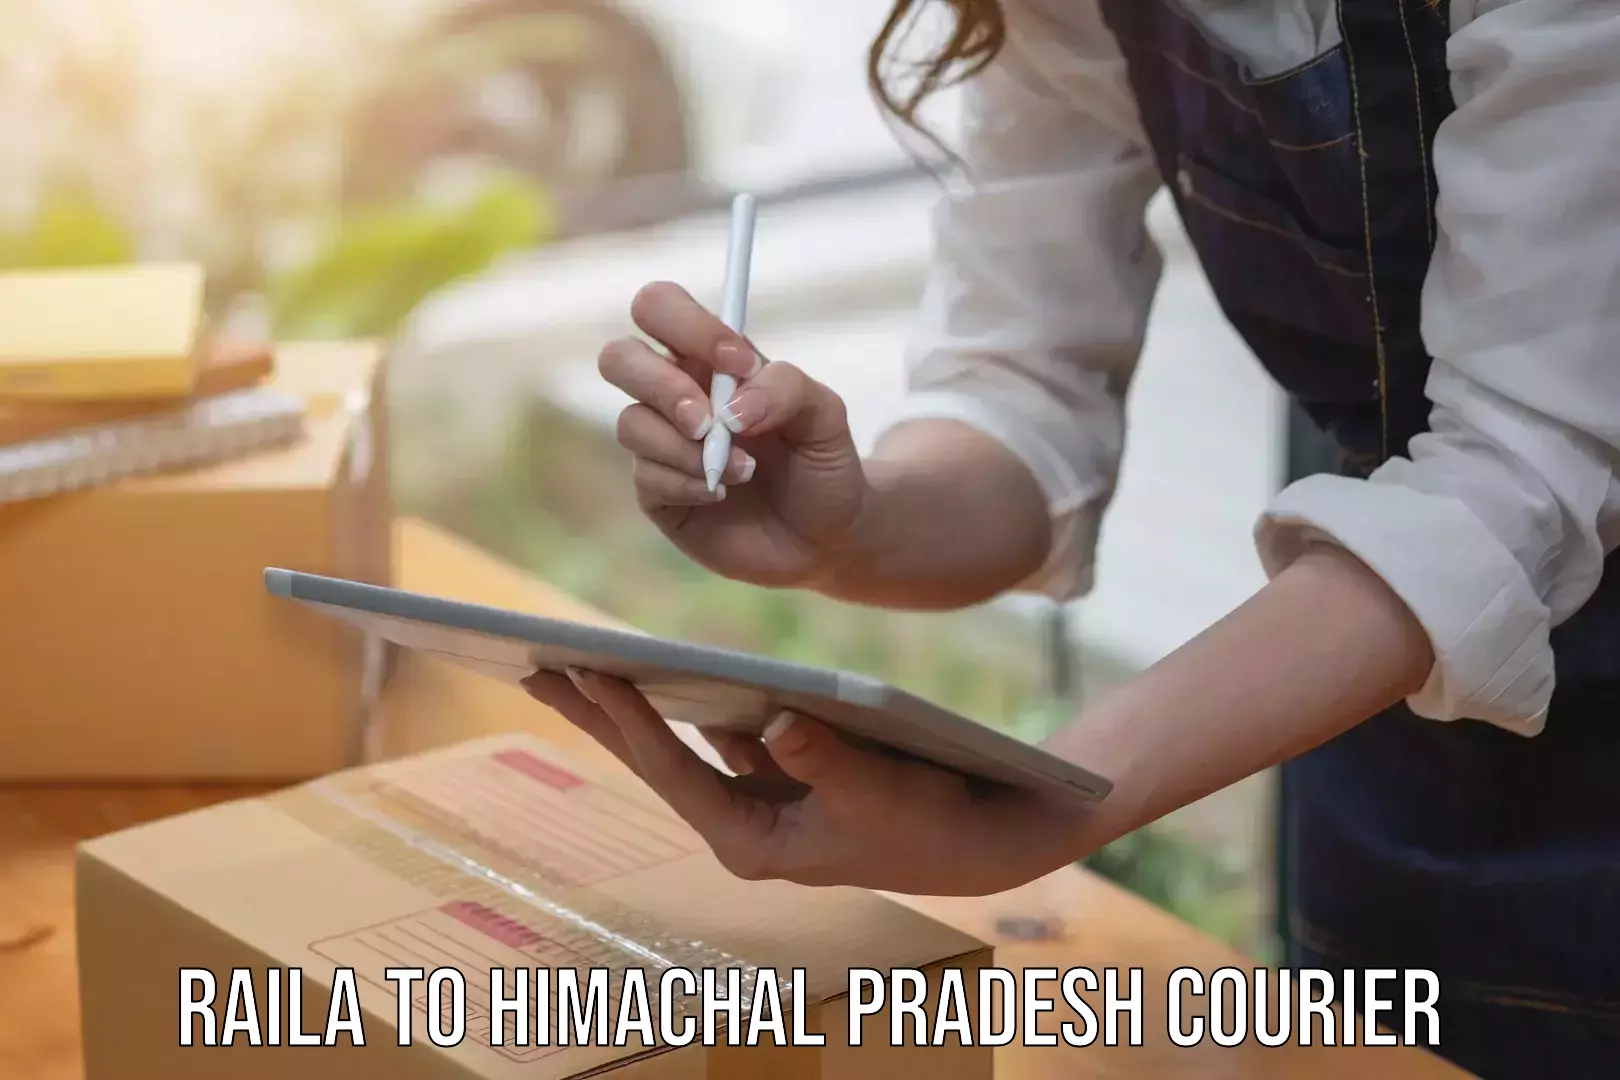 Courier app Raila to Una Himachal Pradesh